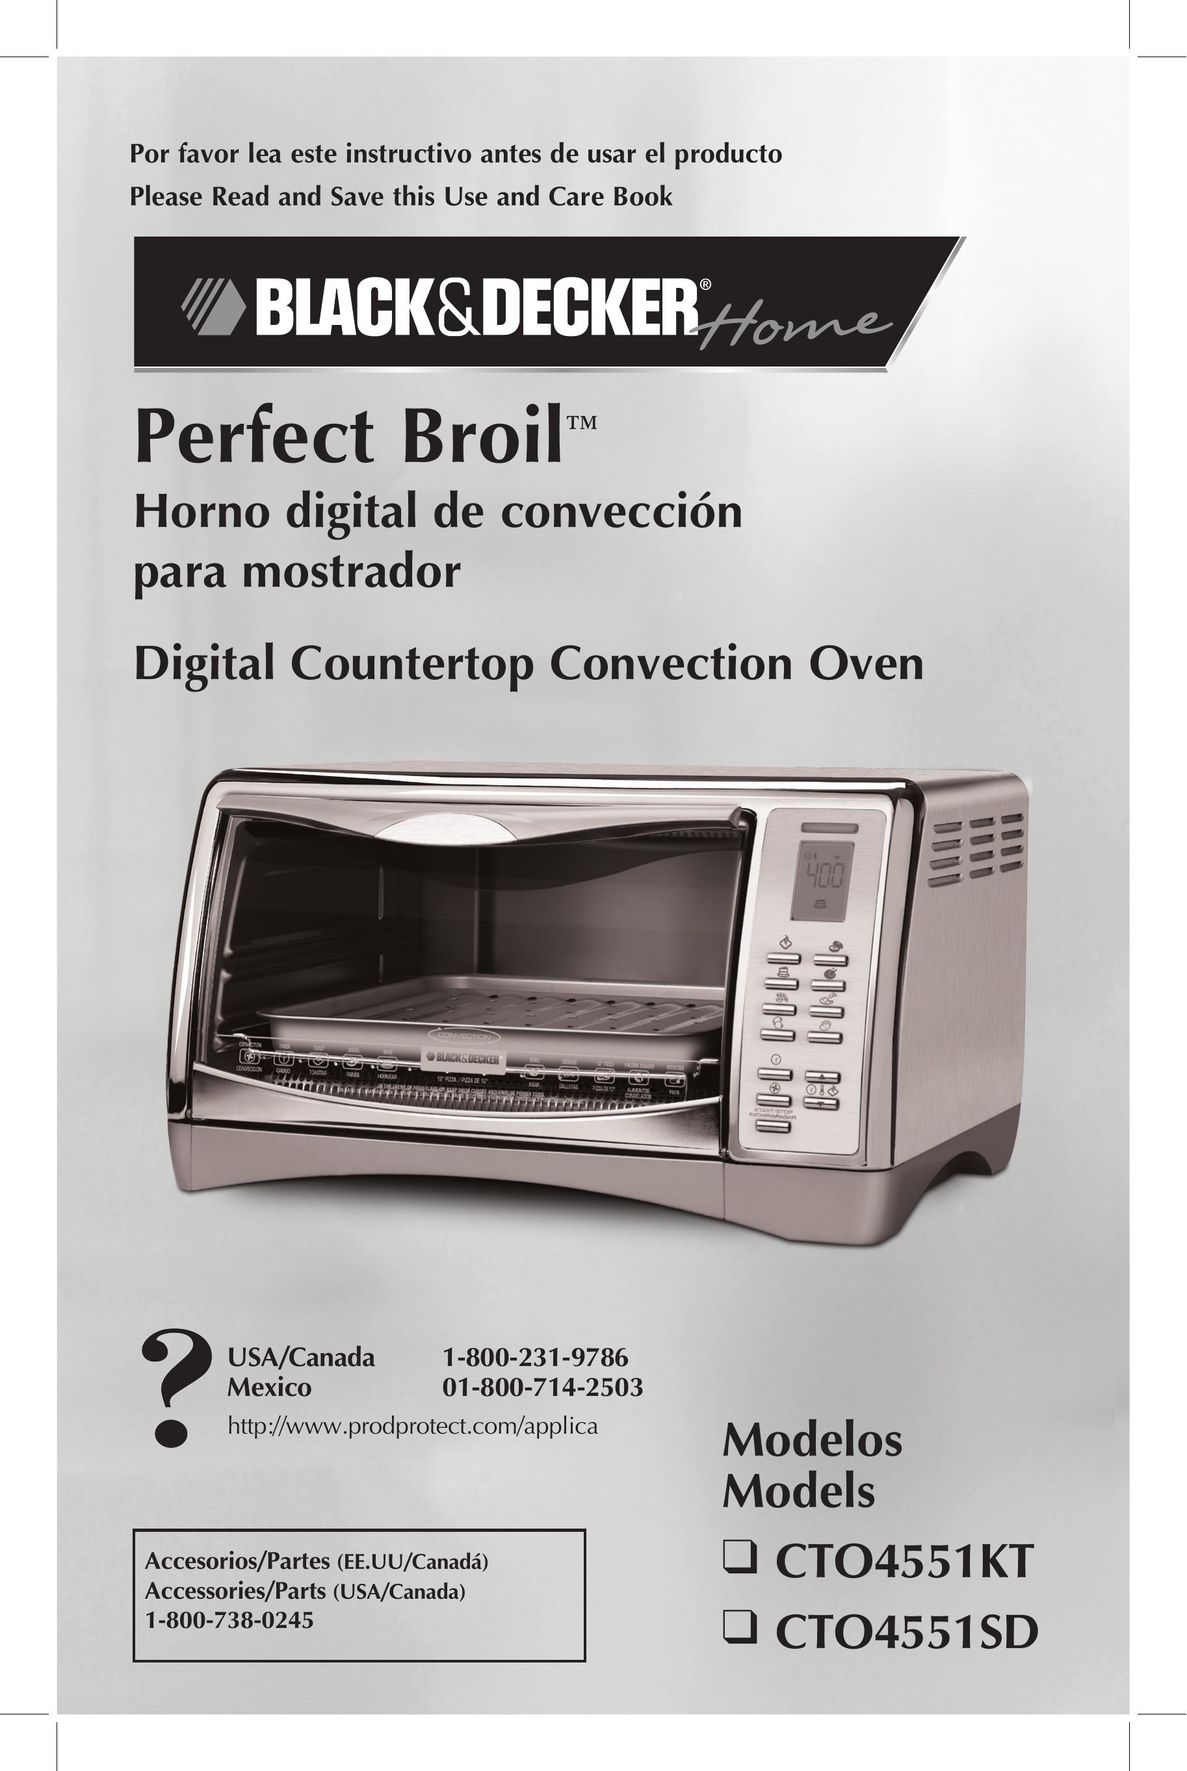 Black & Decker CTO4551SD Convection Oven User Manual